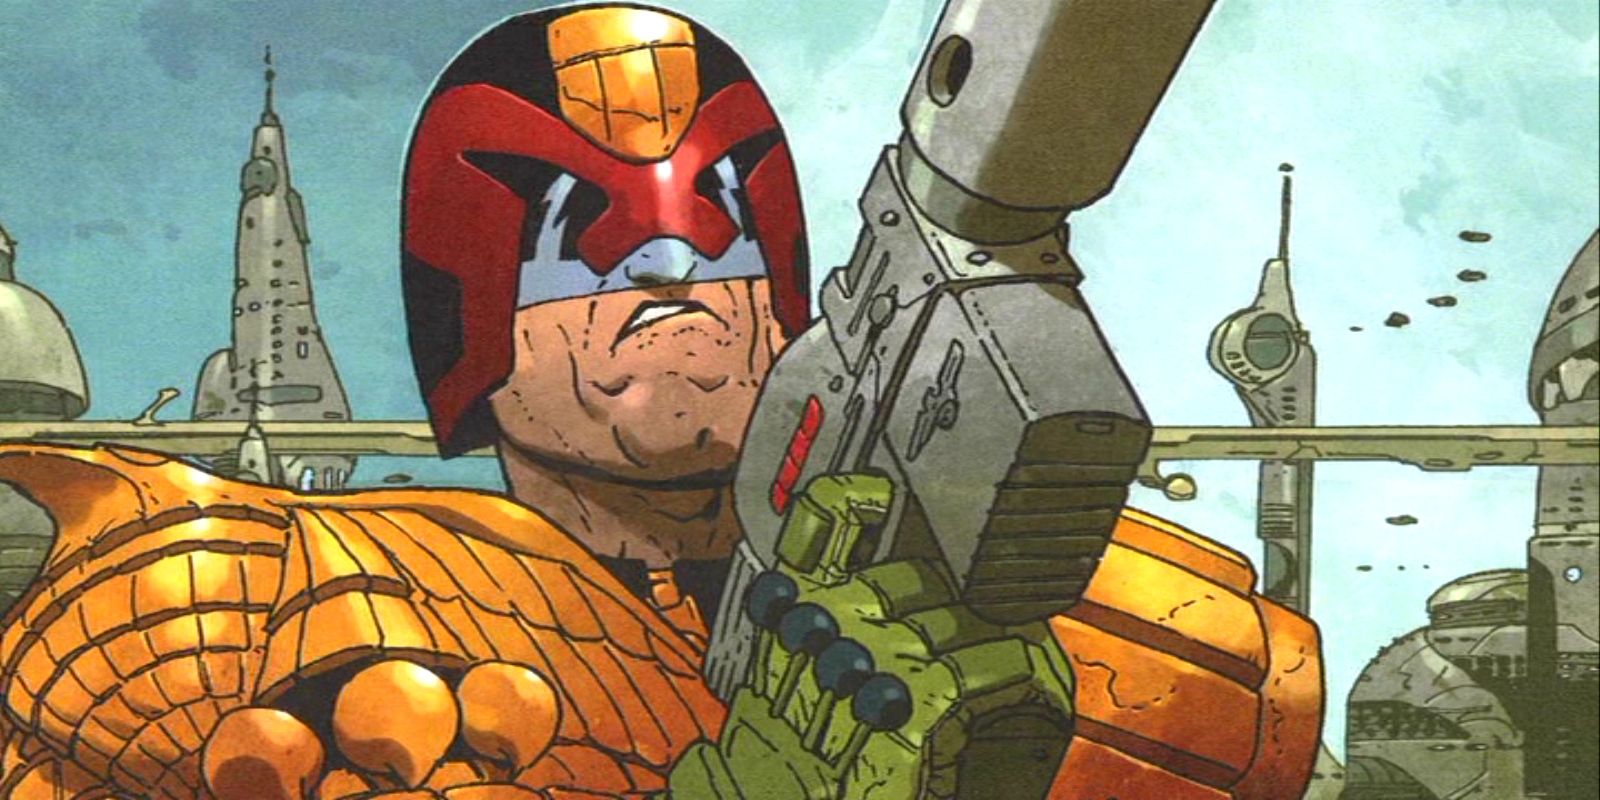 Judge Dredd holding a gun in the Comic